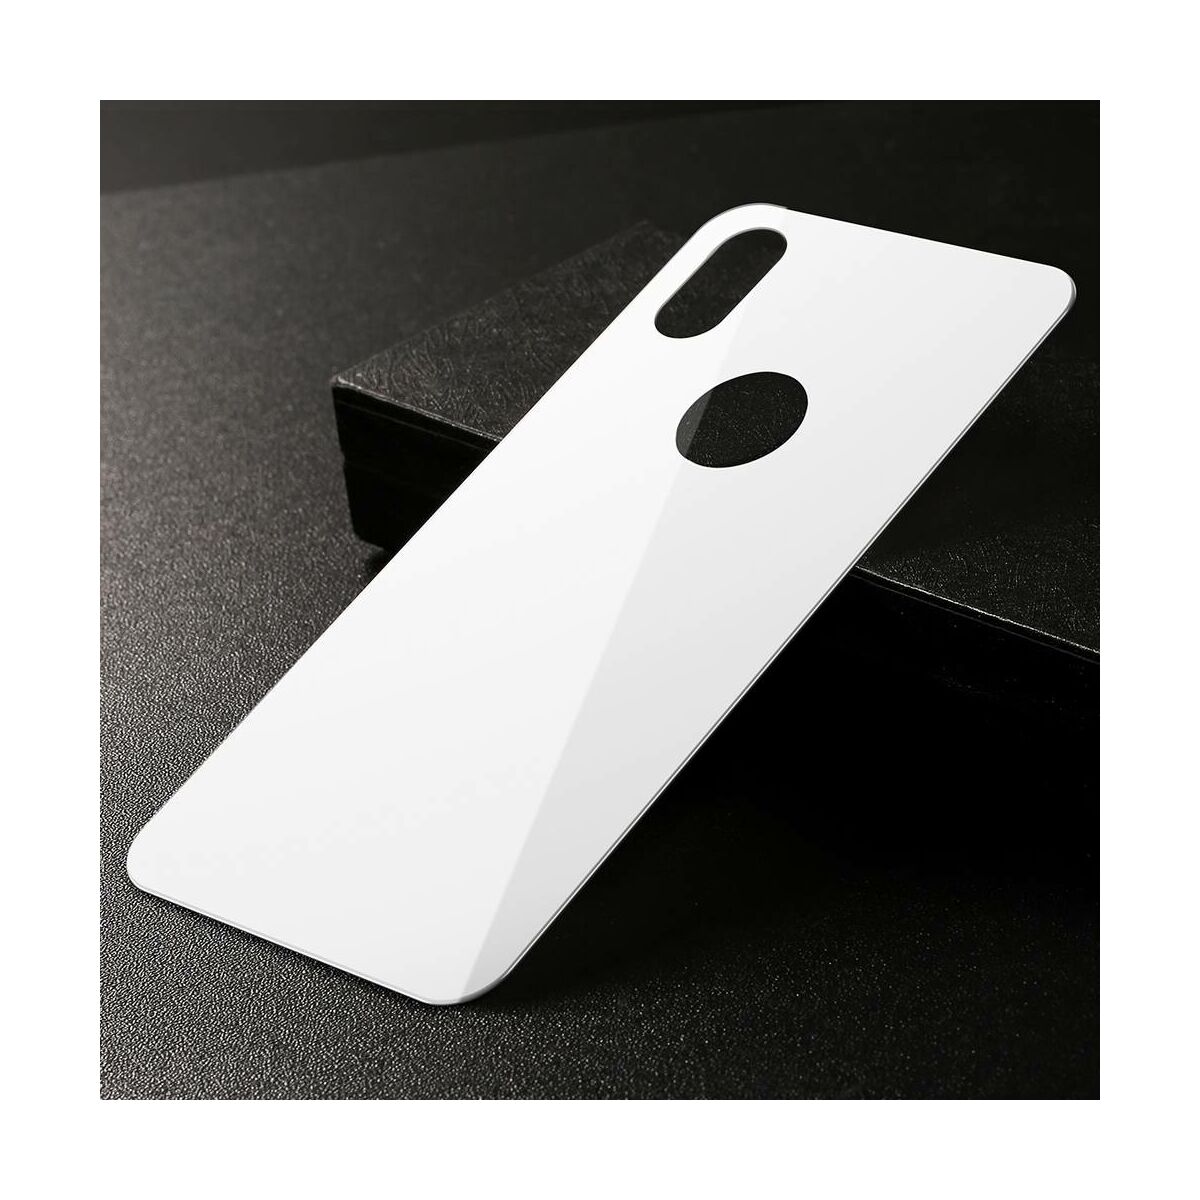 Baseus iPhone XS (5.8") 0.3 mm, teljes lefedésre edzett üveg hátlap védő fólia, fehér (SGAPIPH58-BM02)